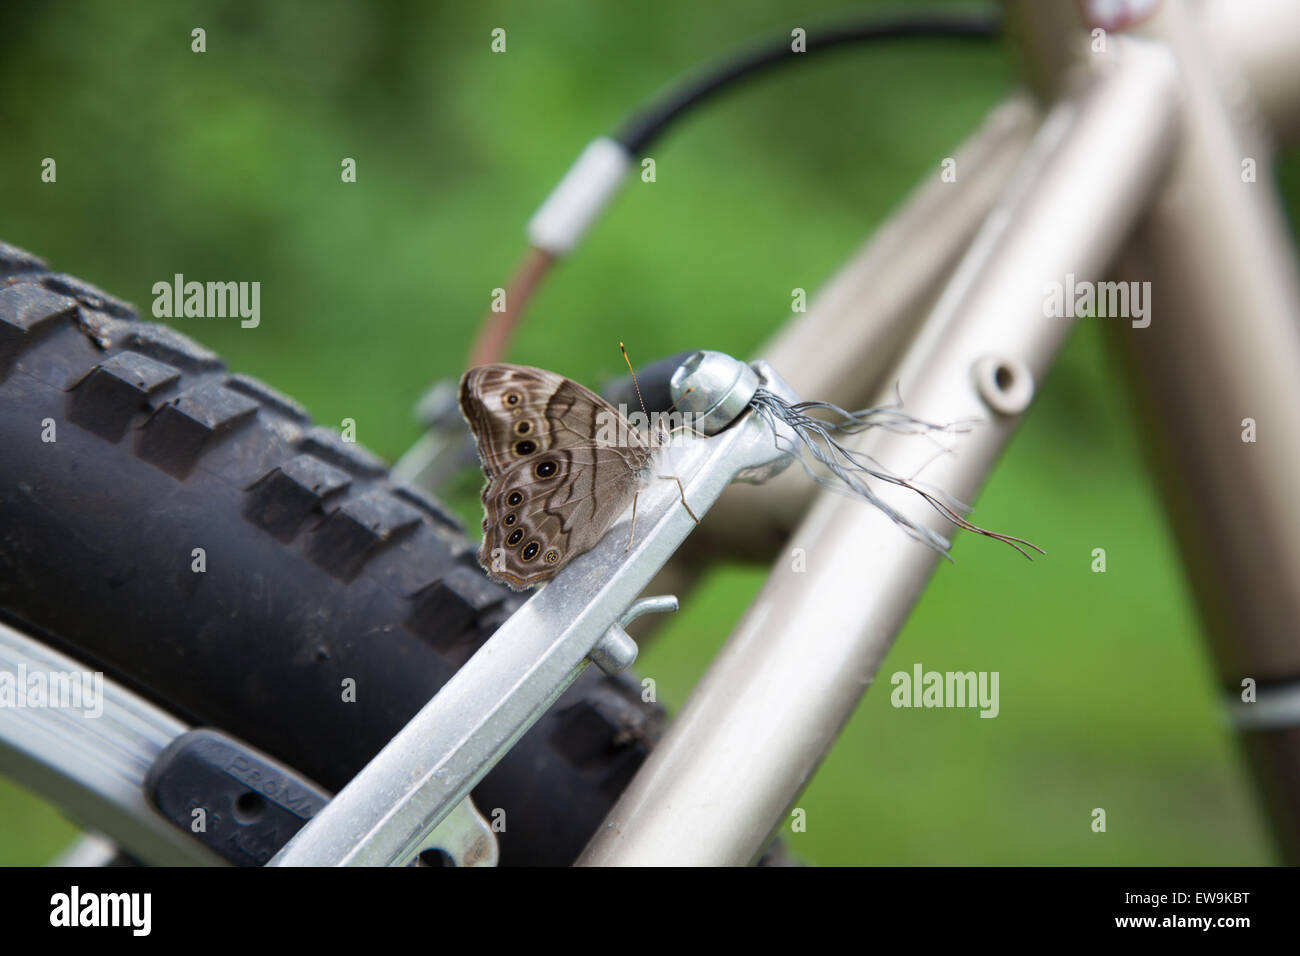 Butterfly l'attelage d'une ride sur une bicyclette. Banque D'Images